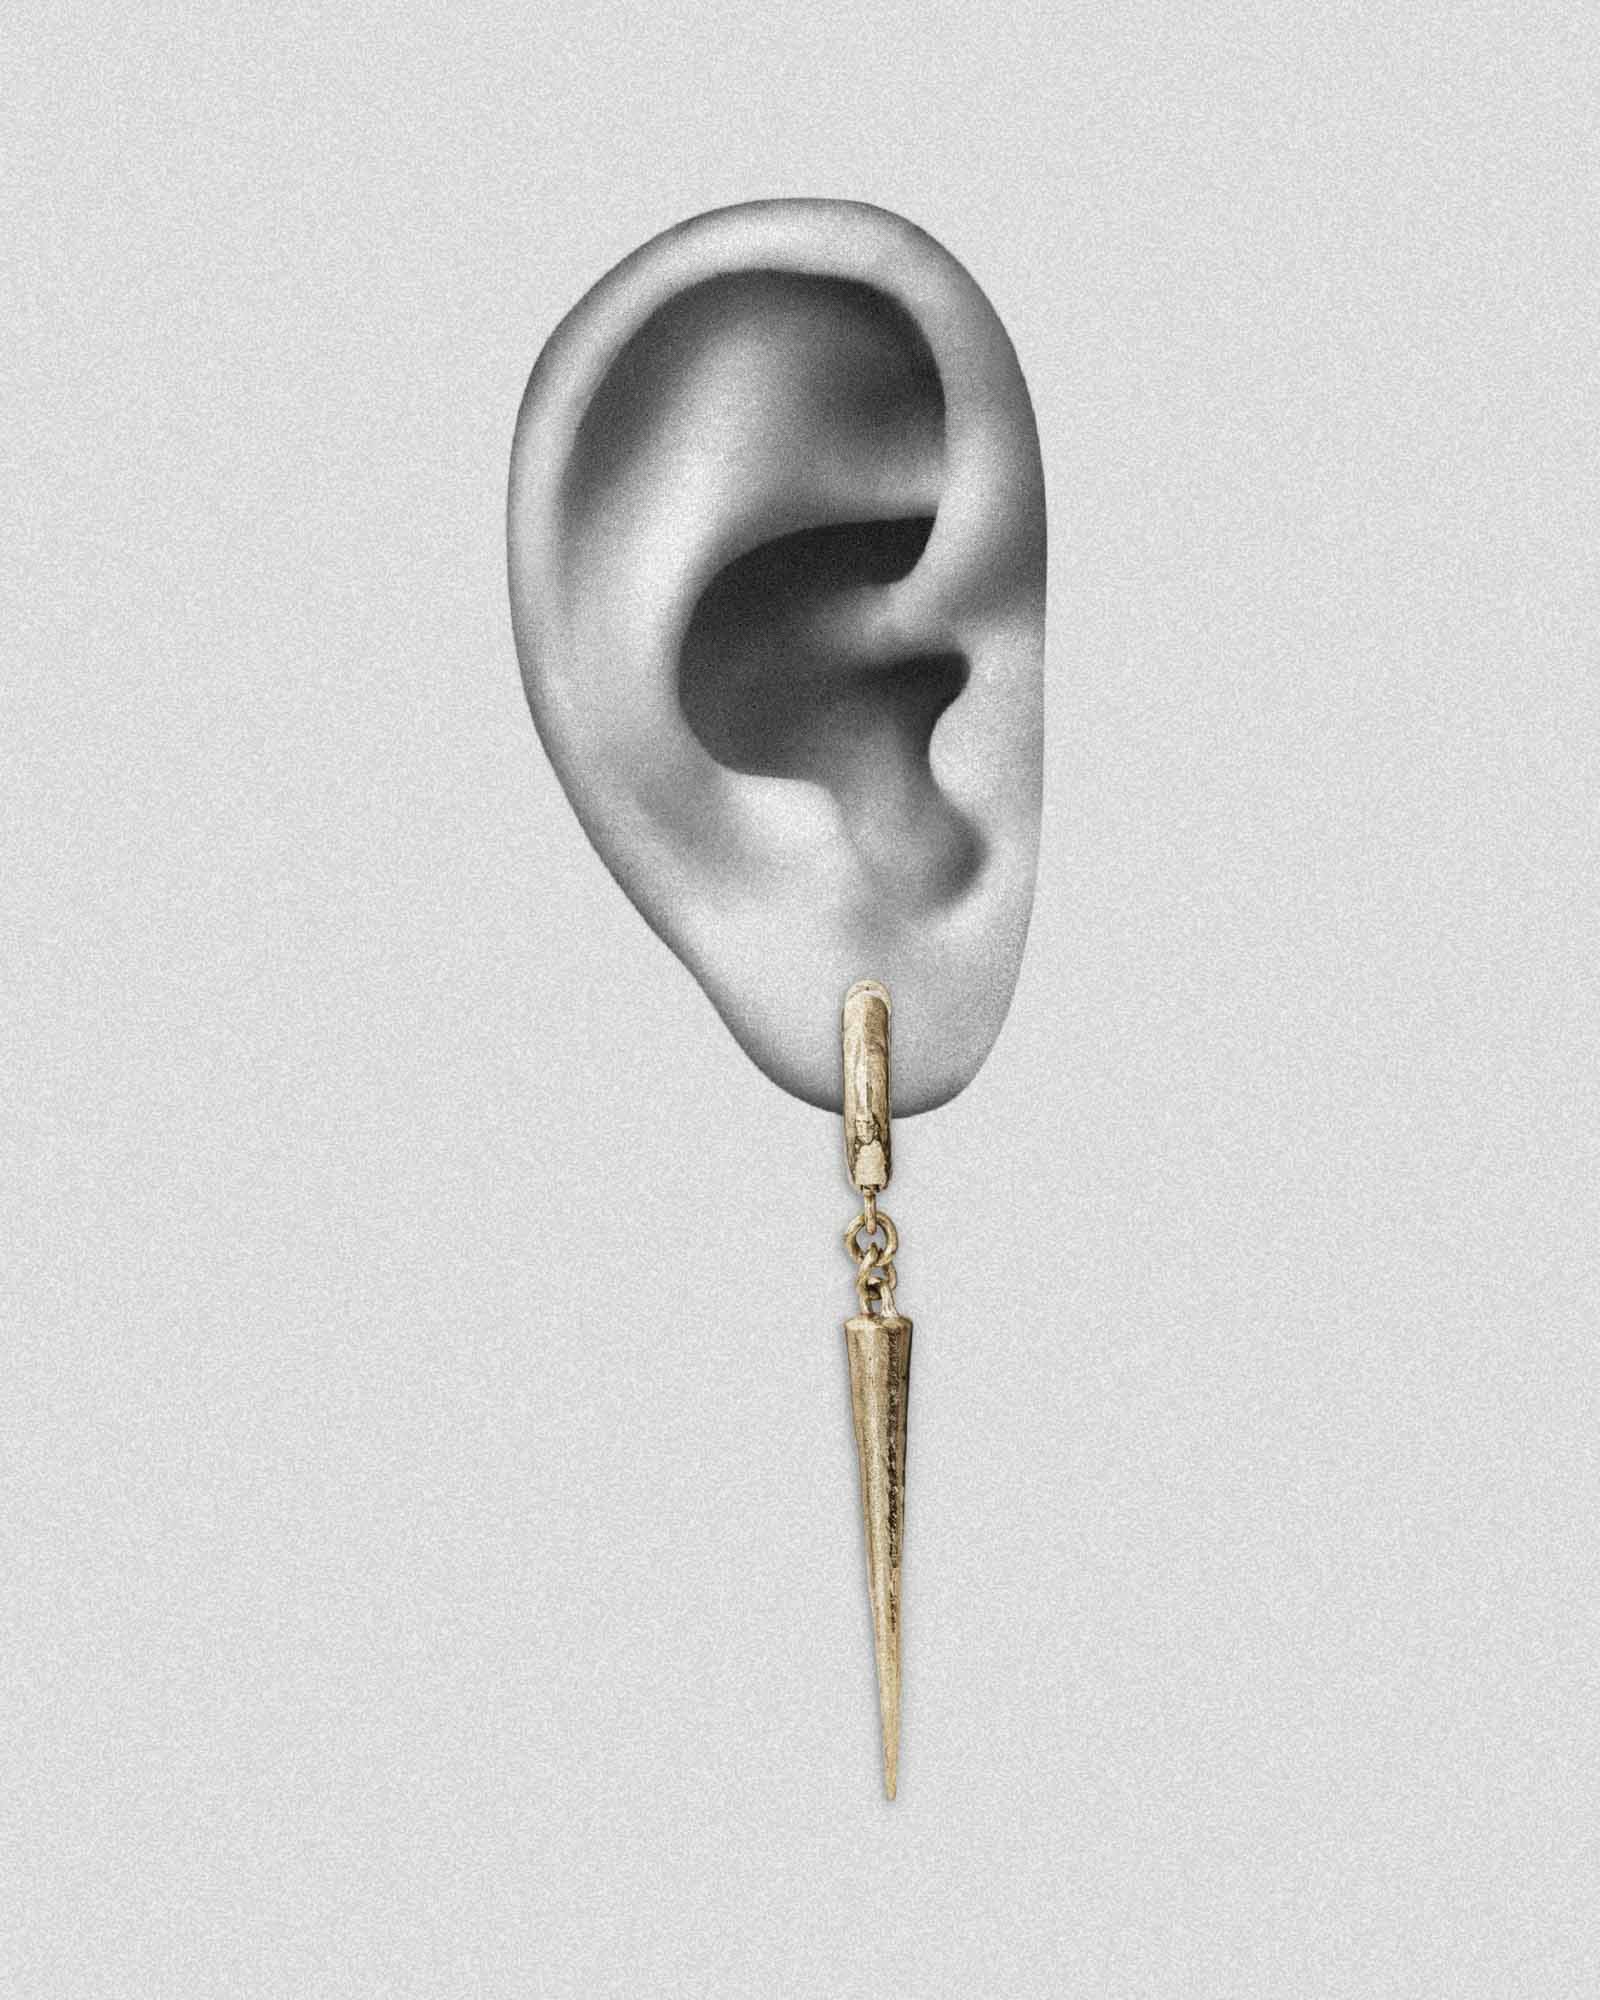  COHEALI 5 Sets Ear Clip Adapter Ornament Earrings